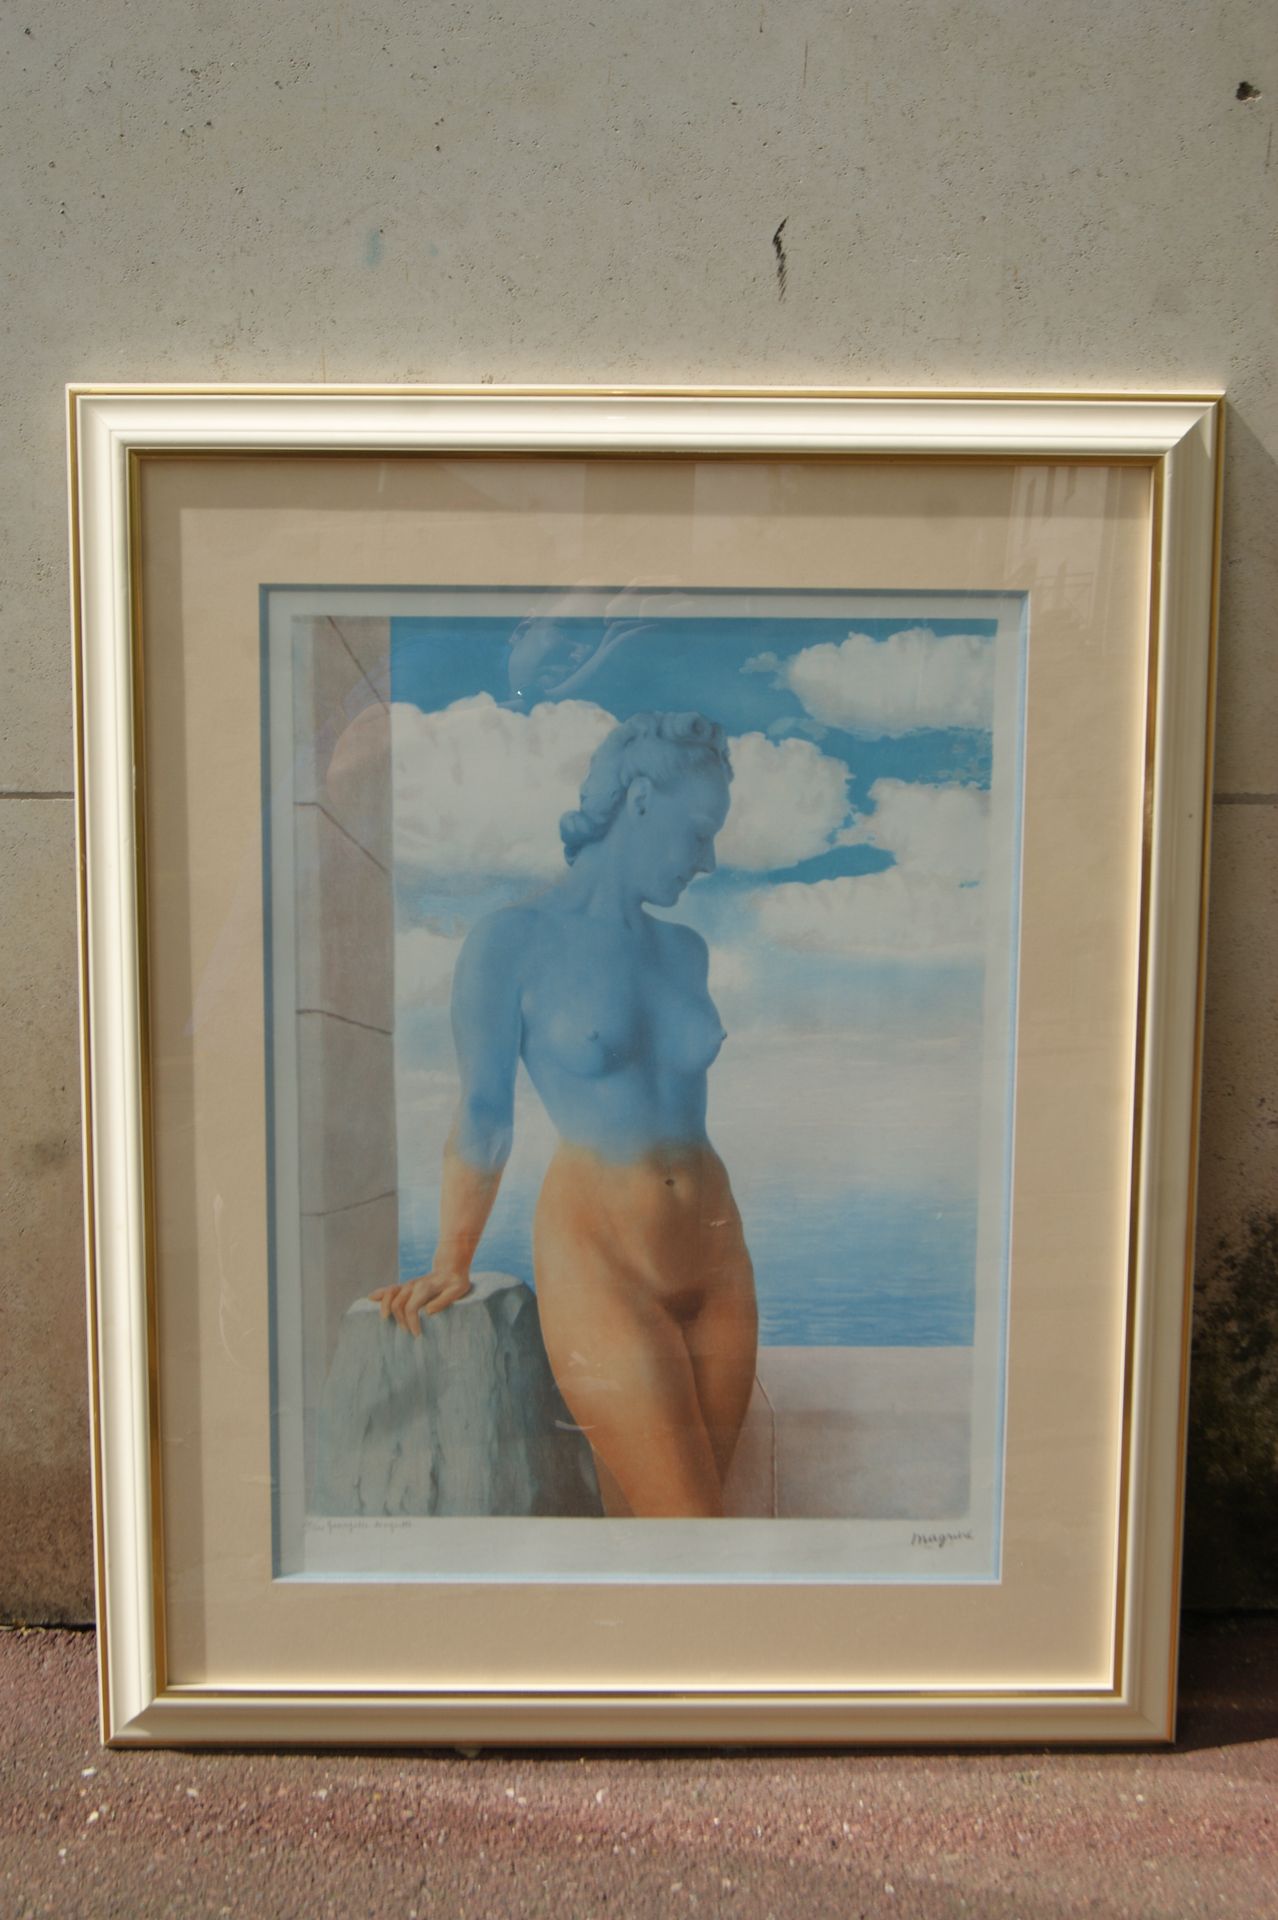 Null 勒内-马格利特(1898-1967)

"黑魔法"。

彩色石板画，铅笔签名 "Georgette Magritte"，并有编号

61x44厘米

&hellip;